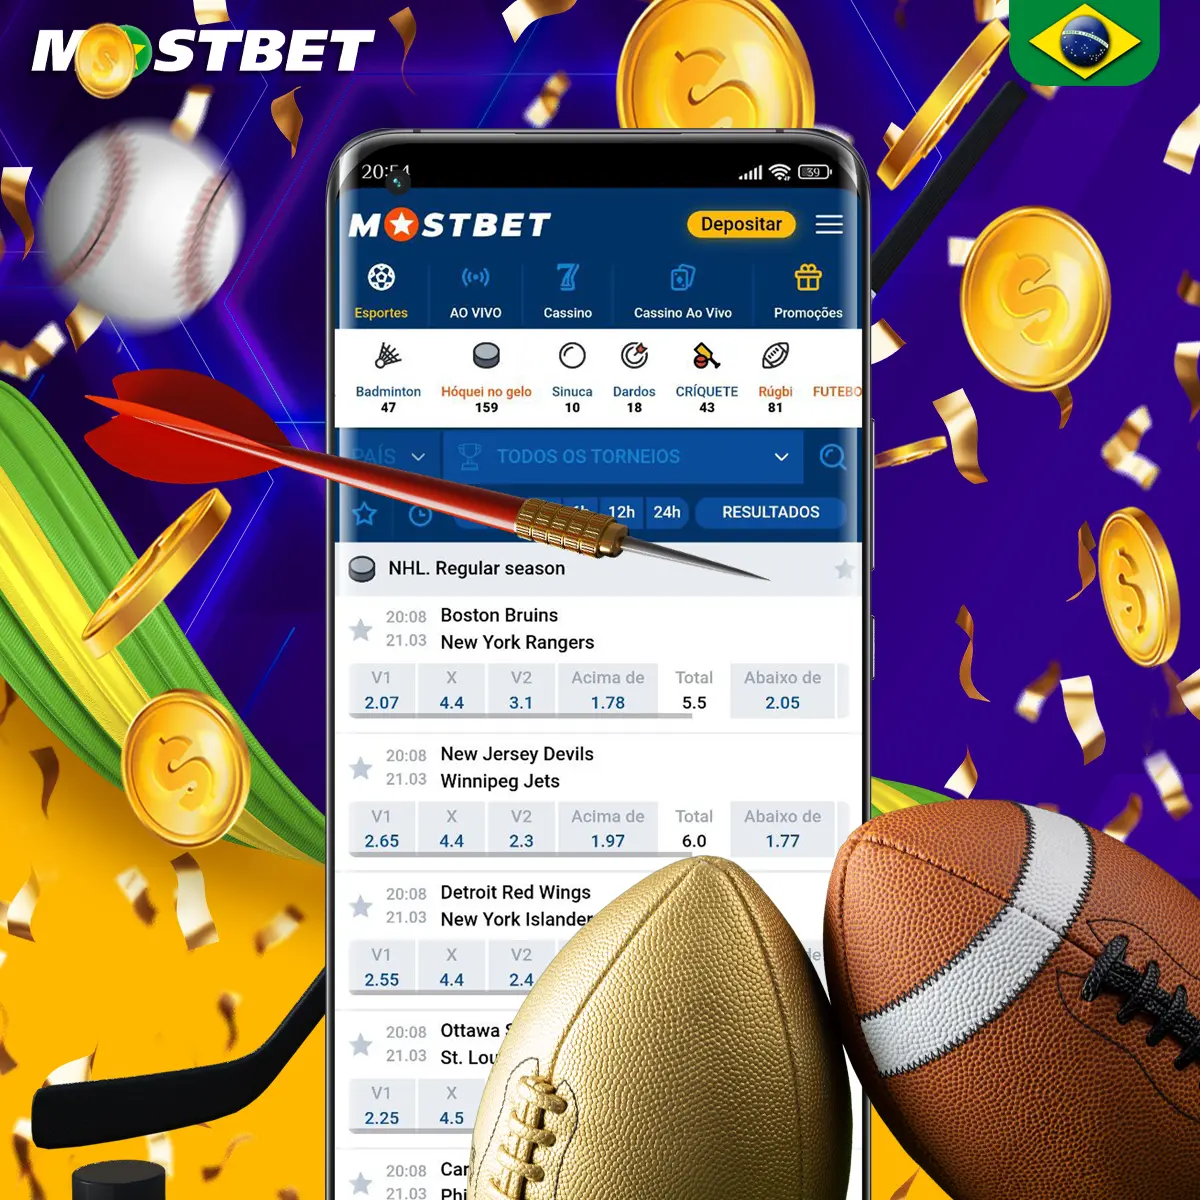 Opções de apostas em esportes eletrônicos na plataforma Mostbet.